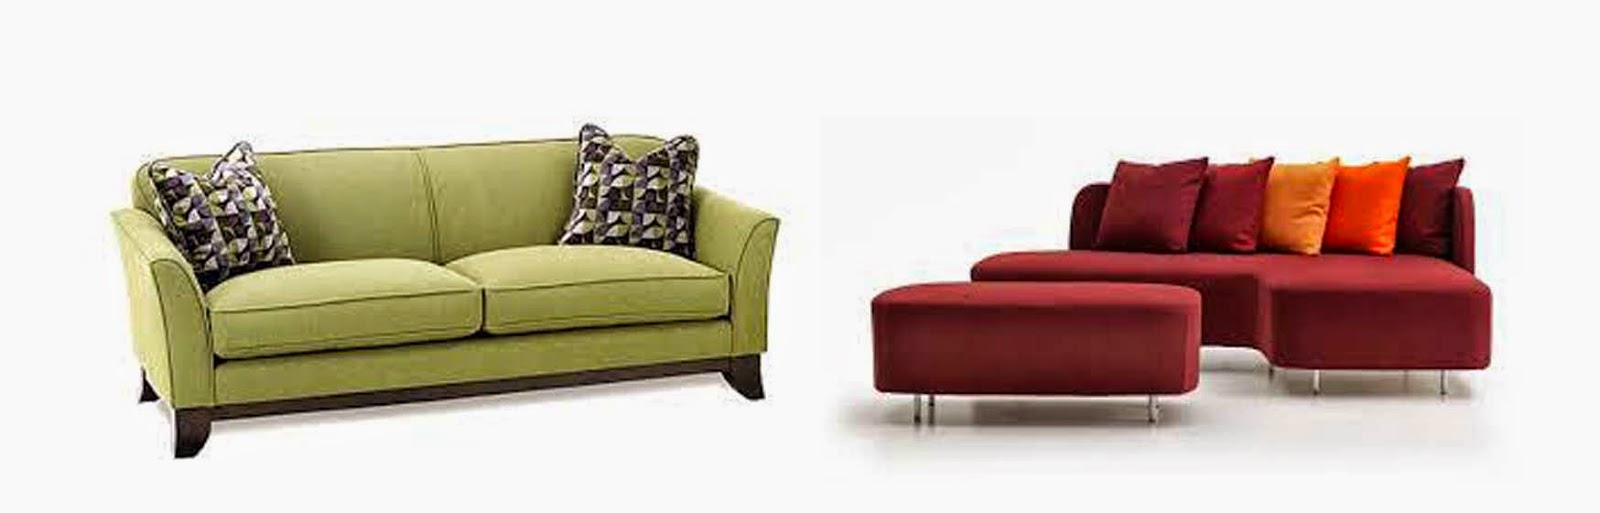 Cara Memilih Harga Kursi Sofa Minimalis Terbaru Berkualitas 2018